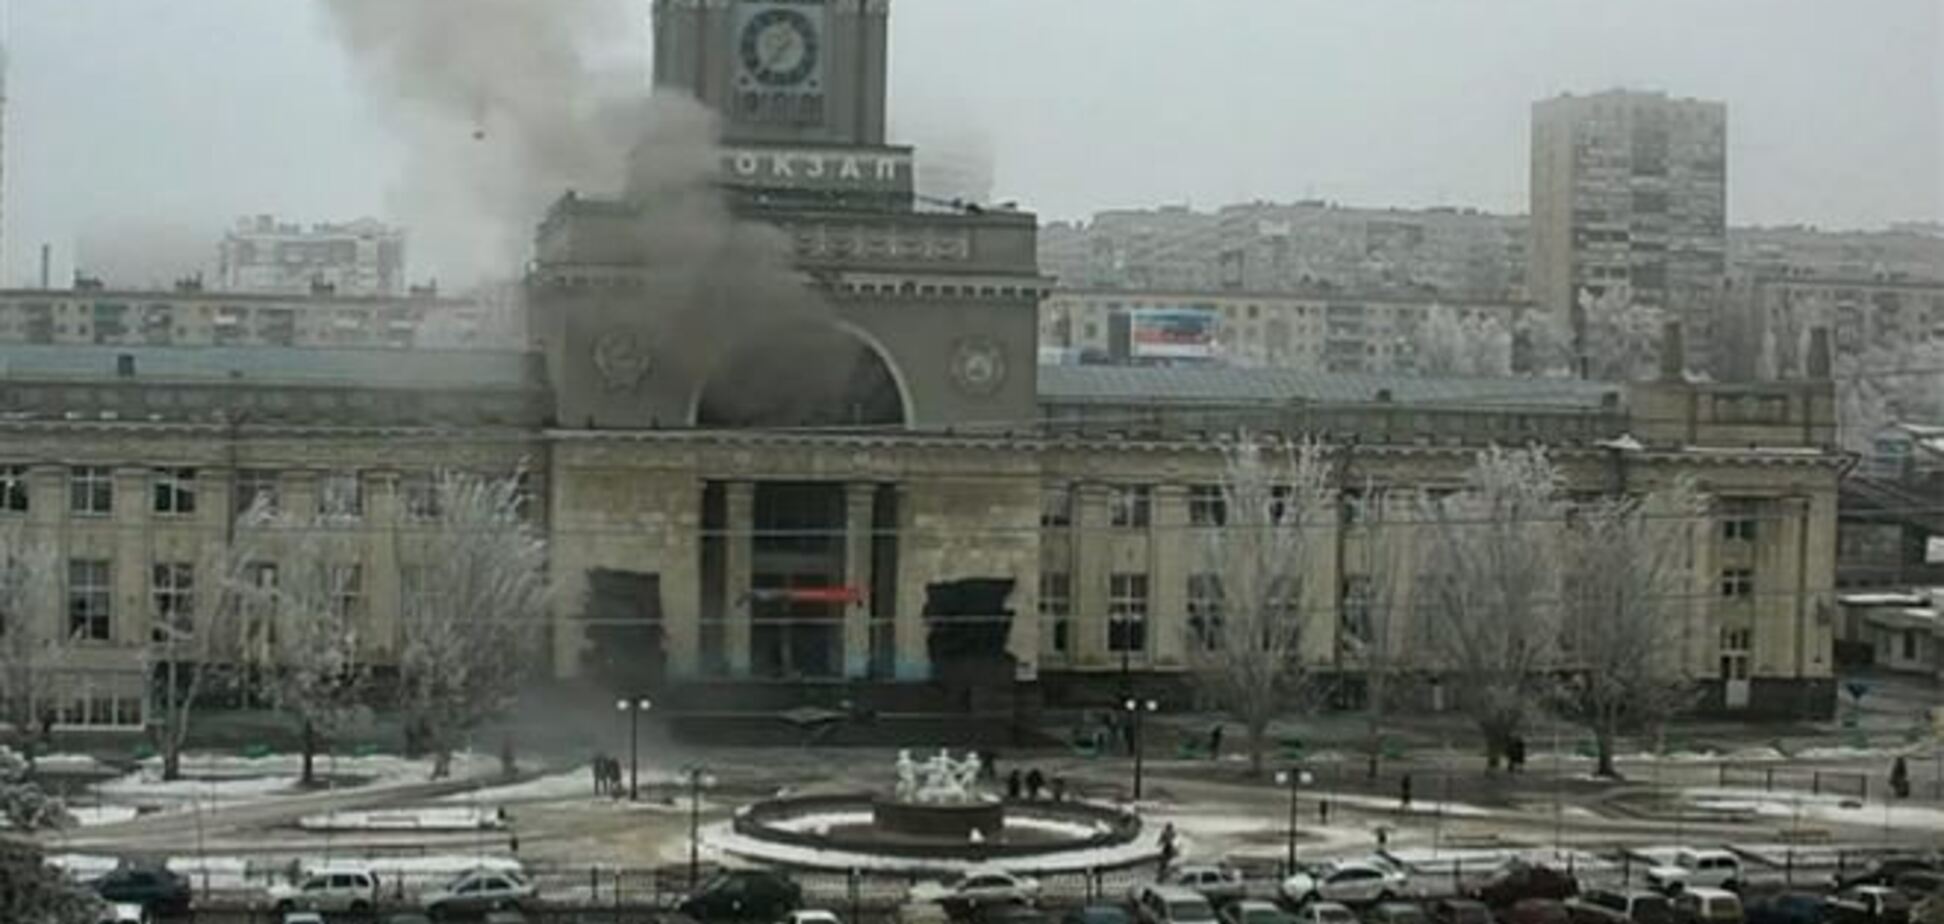 Теракт в Волгограде ставит под сомнение безопасность Олимпиады в Сочи – западные СМИ